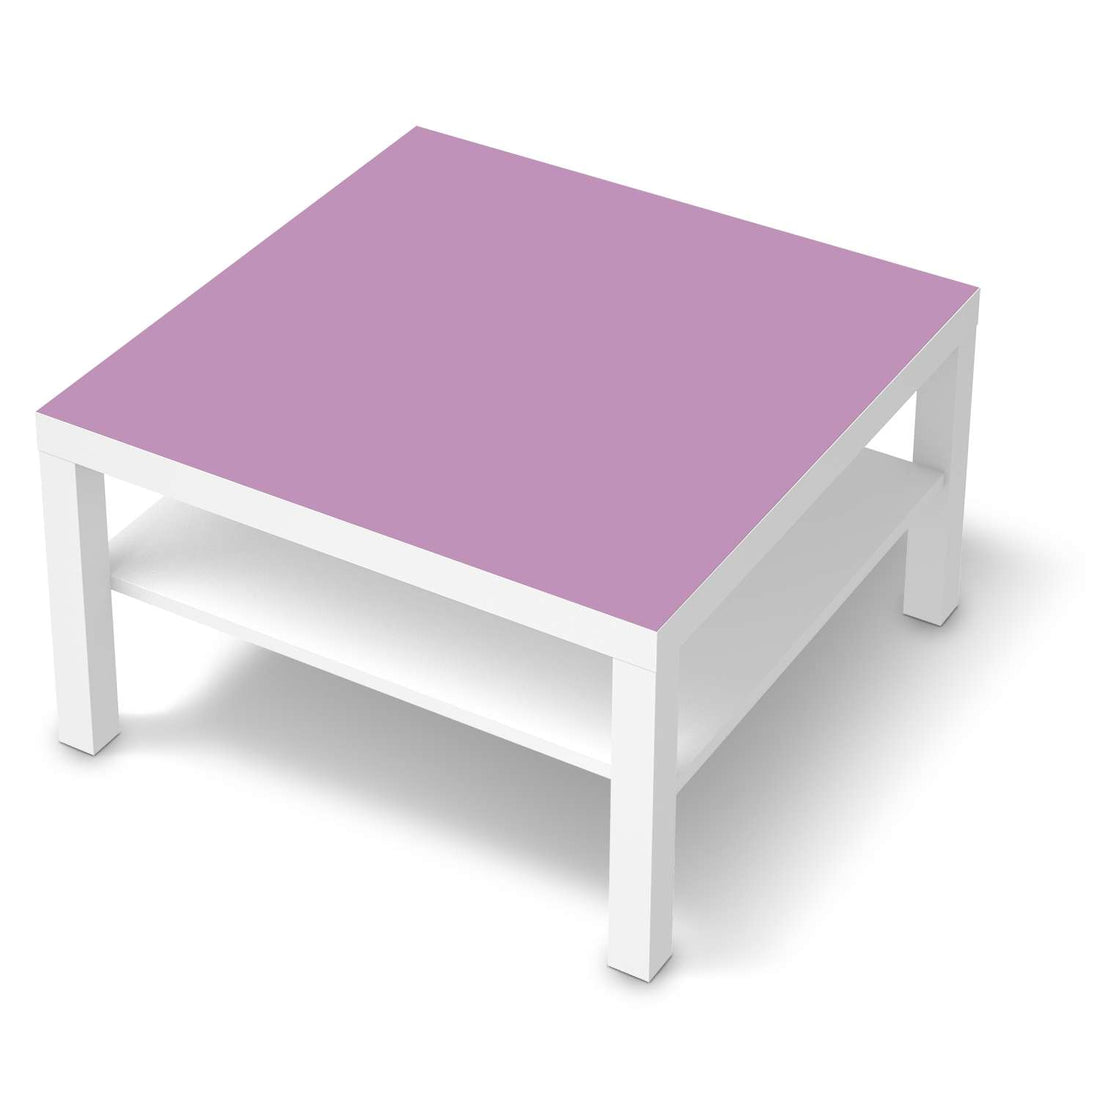 Selbstklebende Folie Flieder Light - IKEA Lack Tisch 78x78 cm - weiss